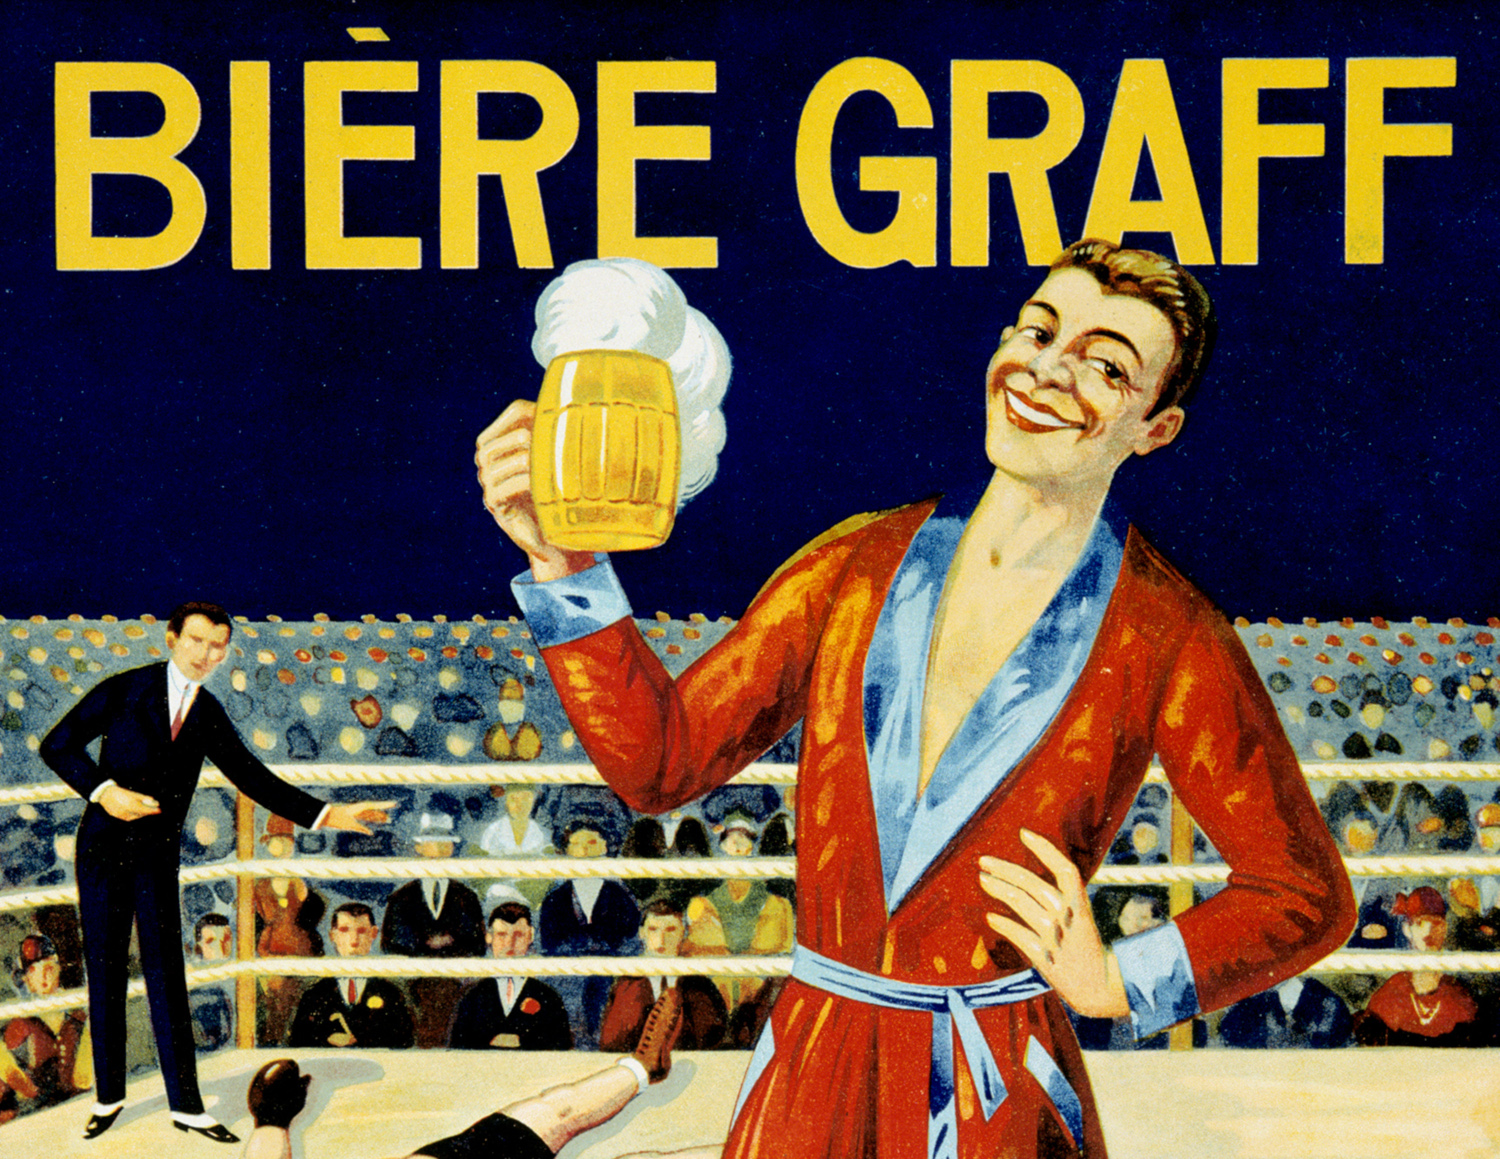 Calendrier publicitaire pour la marque de bière Graff, daté de l'année 1928. Musée de Bretagne : 998.0009.1.